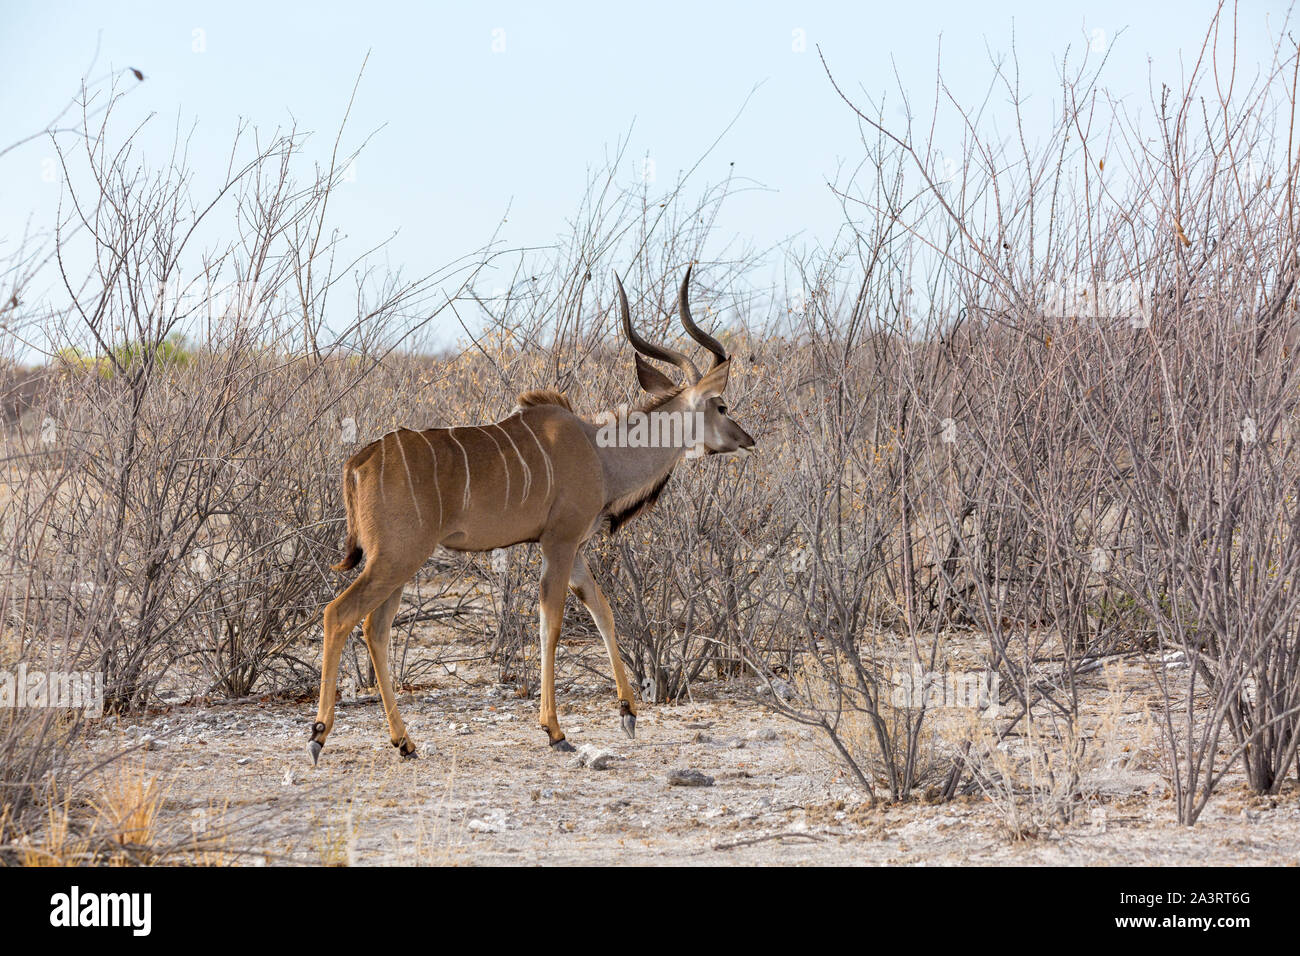 Grand Koudou mâle marche à travers un paysage aride et stérile, la Namibie, l'Afrique Banque D'Images